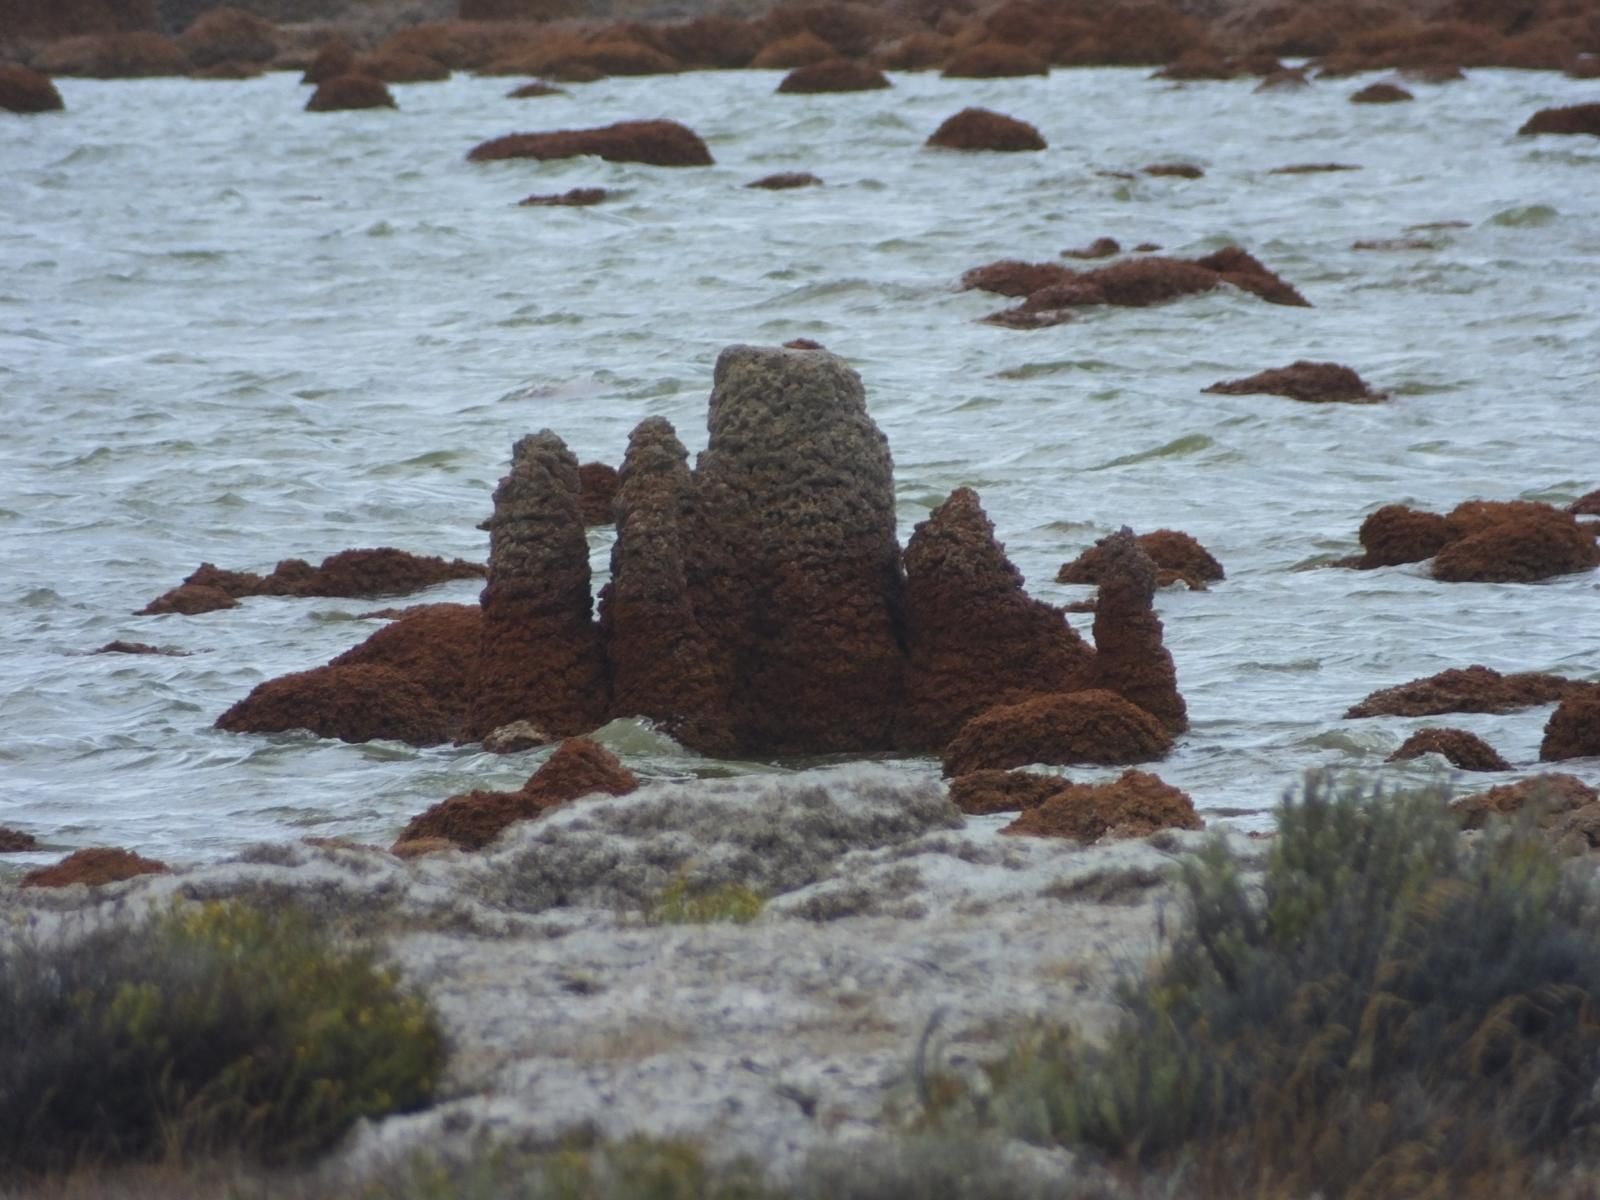 Строматолиты растут в озере, их живые конусовидные образования видны из воды.